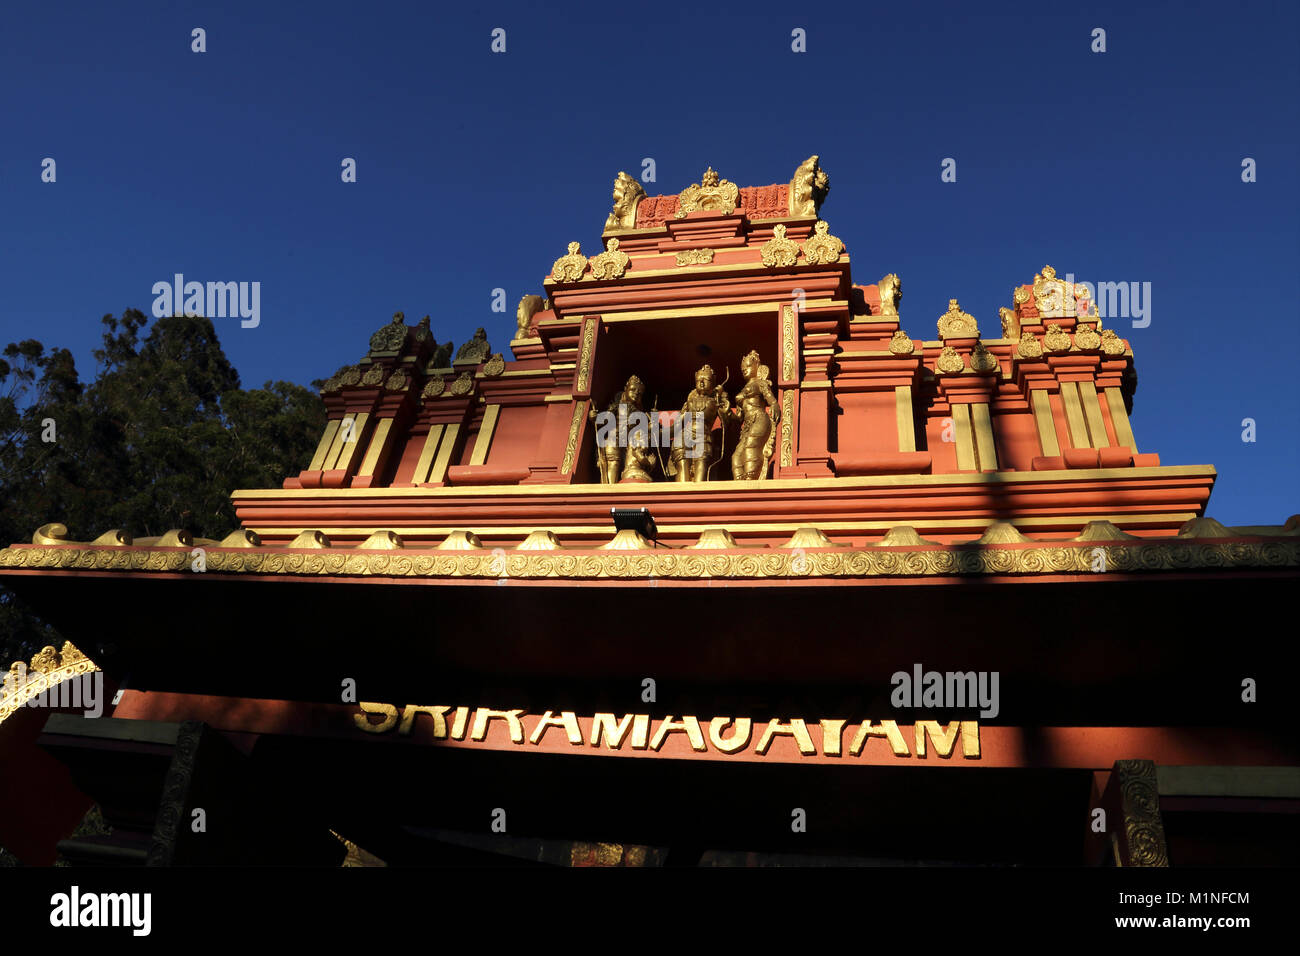 Sita Amman Tempio Seetha Eliya centrale Provincia dello Sri Lanka ha detto di essere il luogo dove Ravana detenute sita in cattività Il Ramayana oro statue del Signore Rama Foto Stock